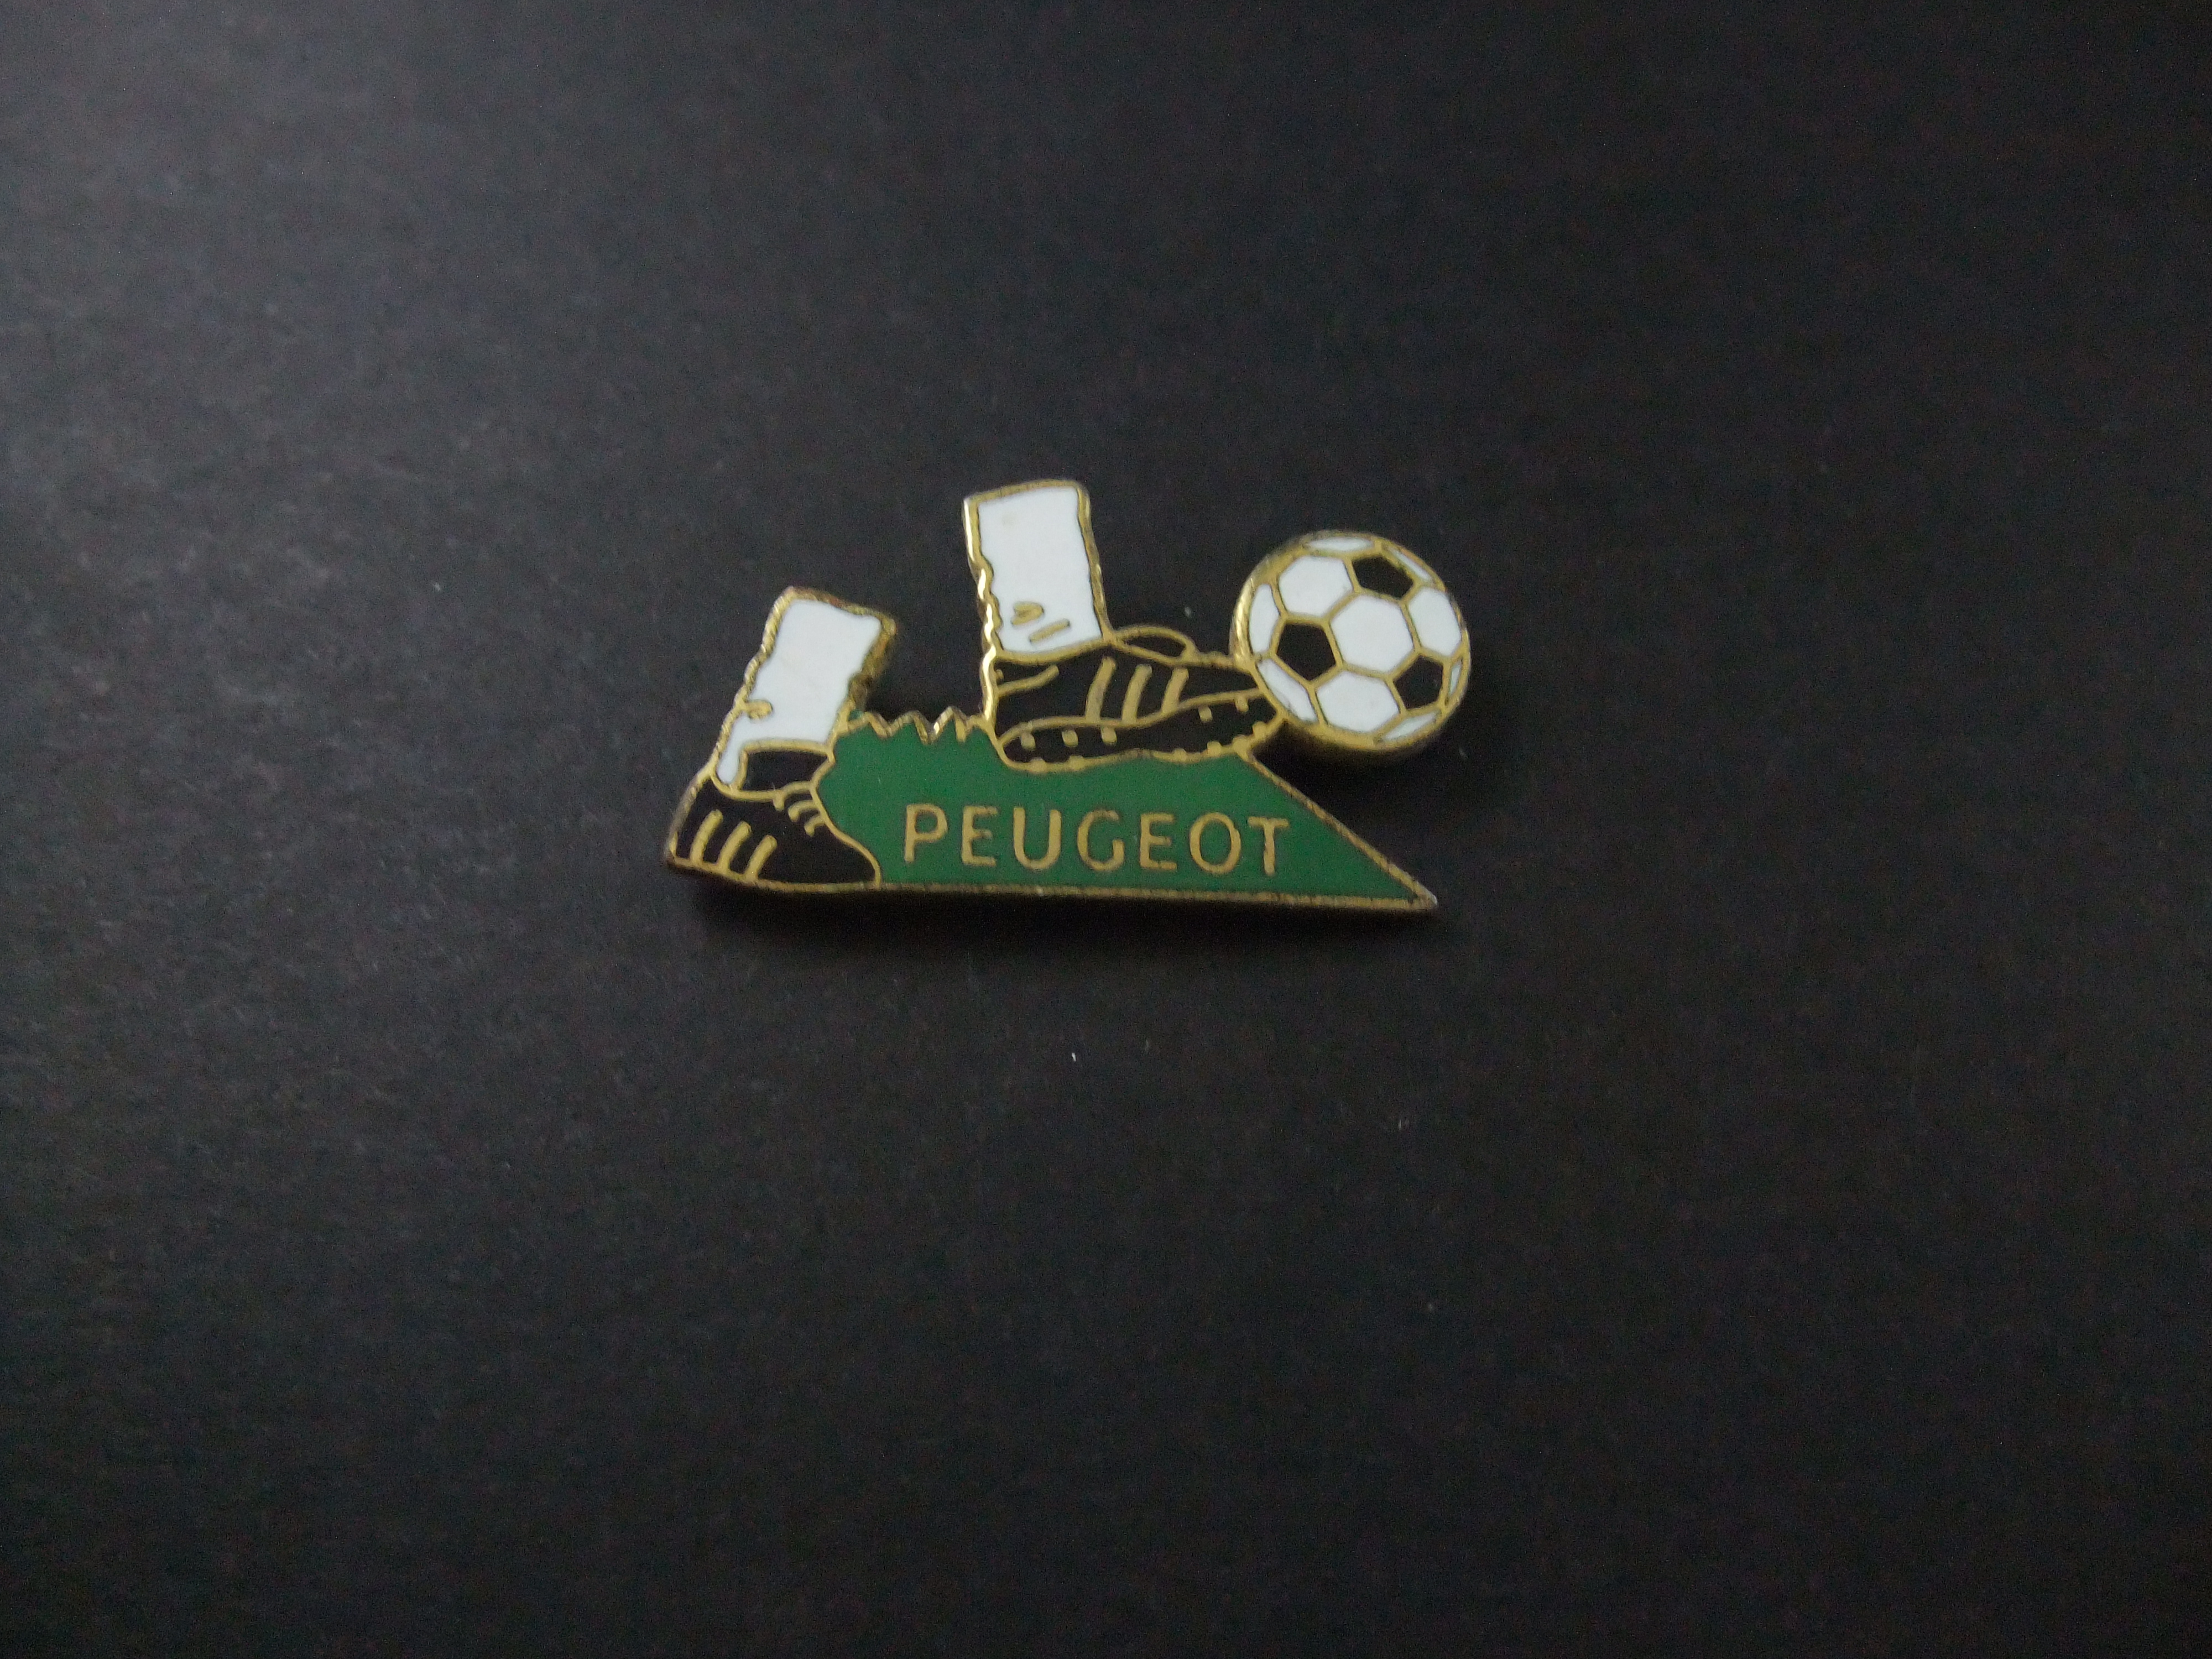 Peugeot sponsor voetbal,